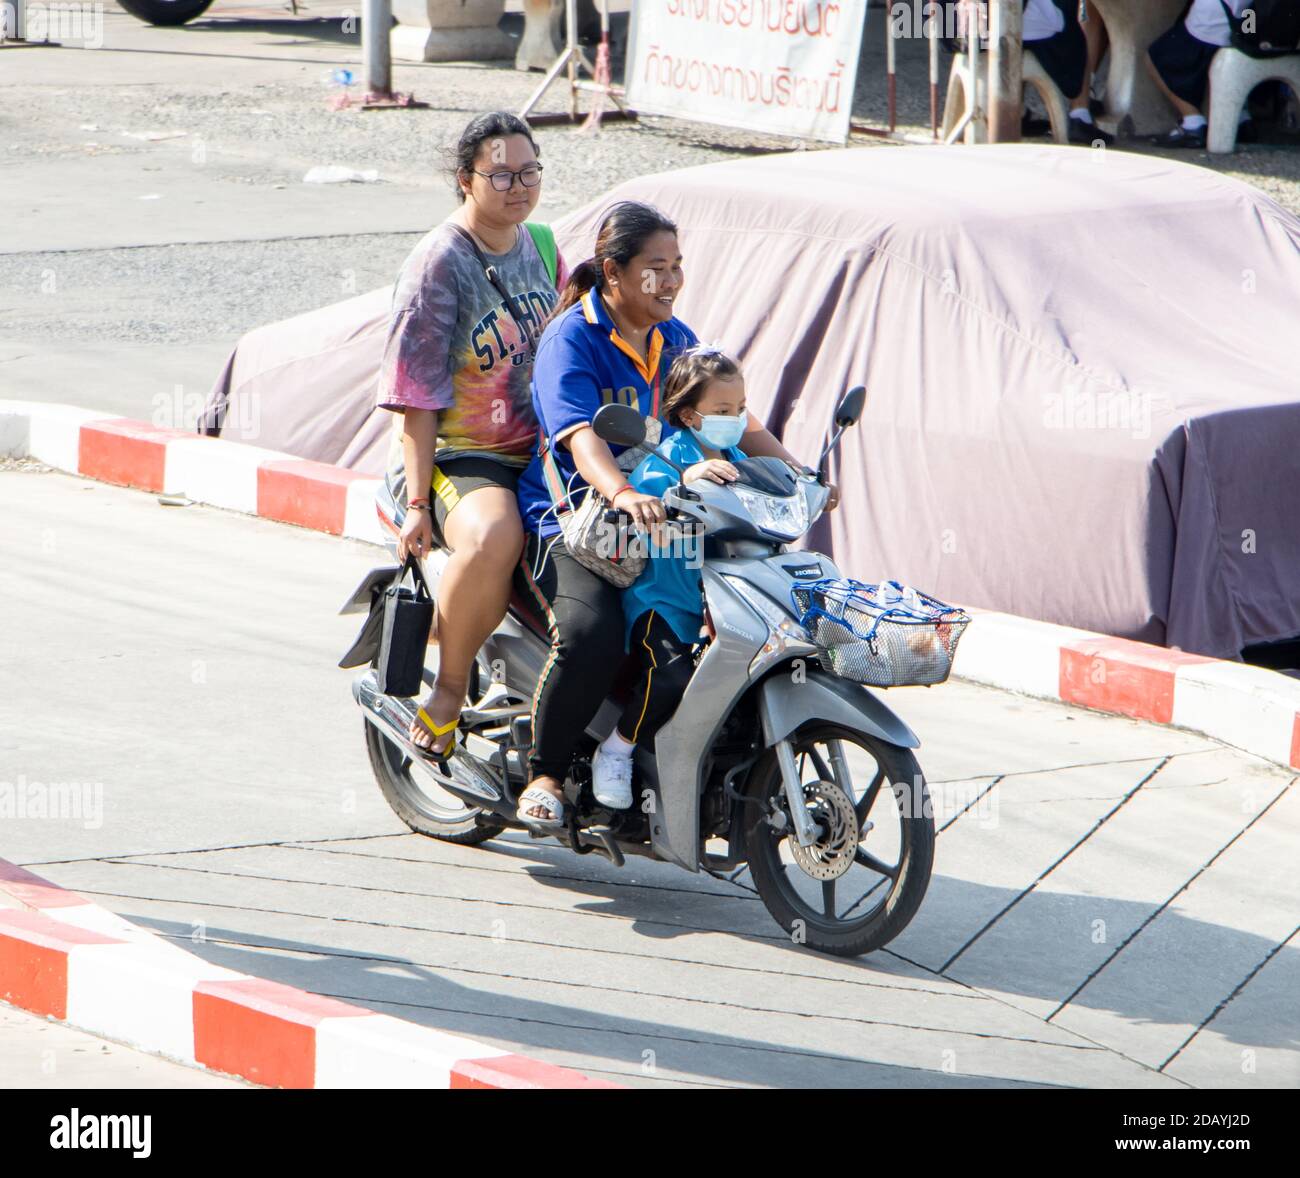 SAMUT PRAKAN, THAÏLANDE, JUL 29 2020, deux femmes sont à bord d'une moto  avec une petite fille Photo Stock - Alamy